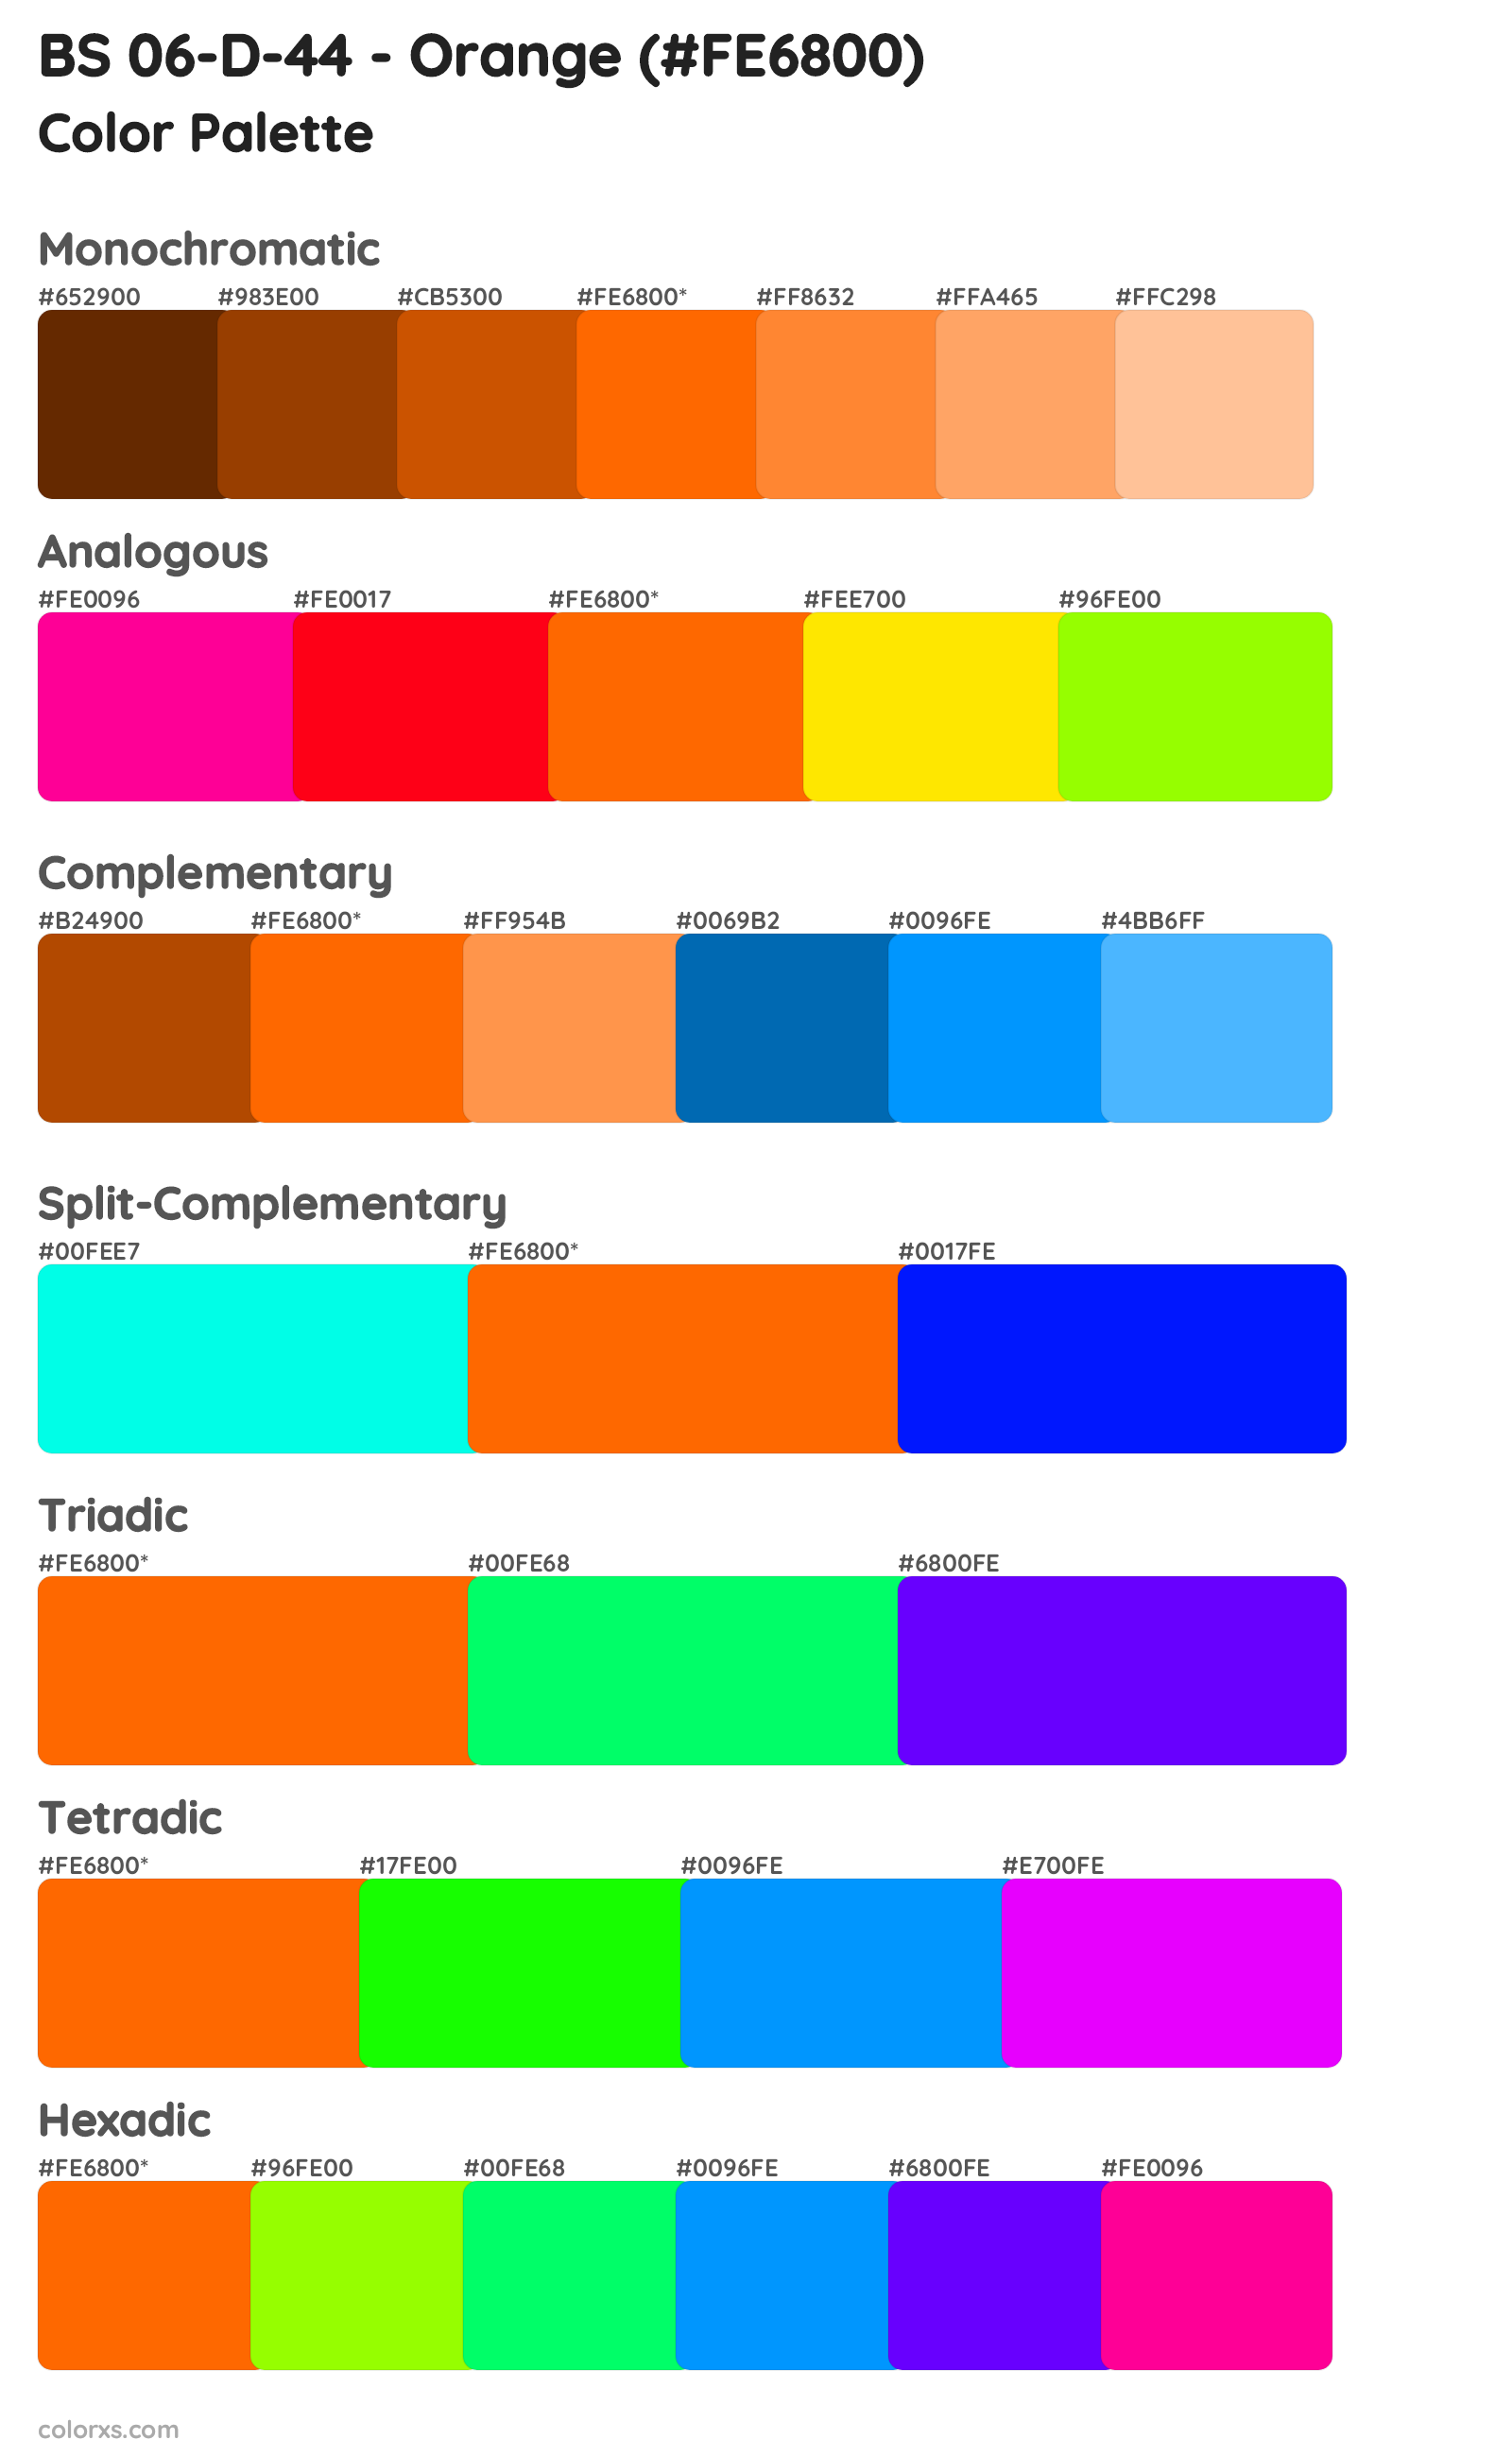 BS 06-D-44 - Orange Color Scheme Palettes